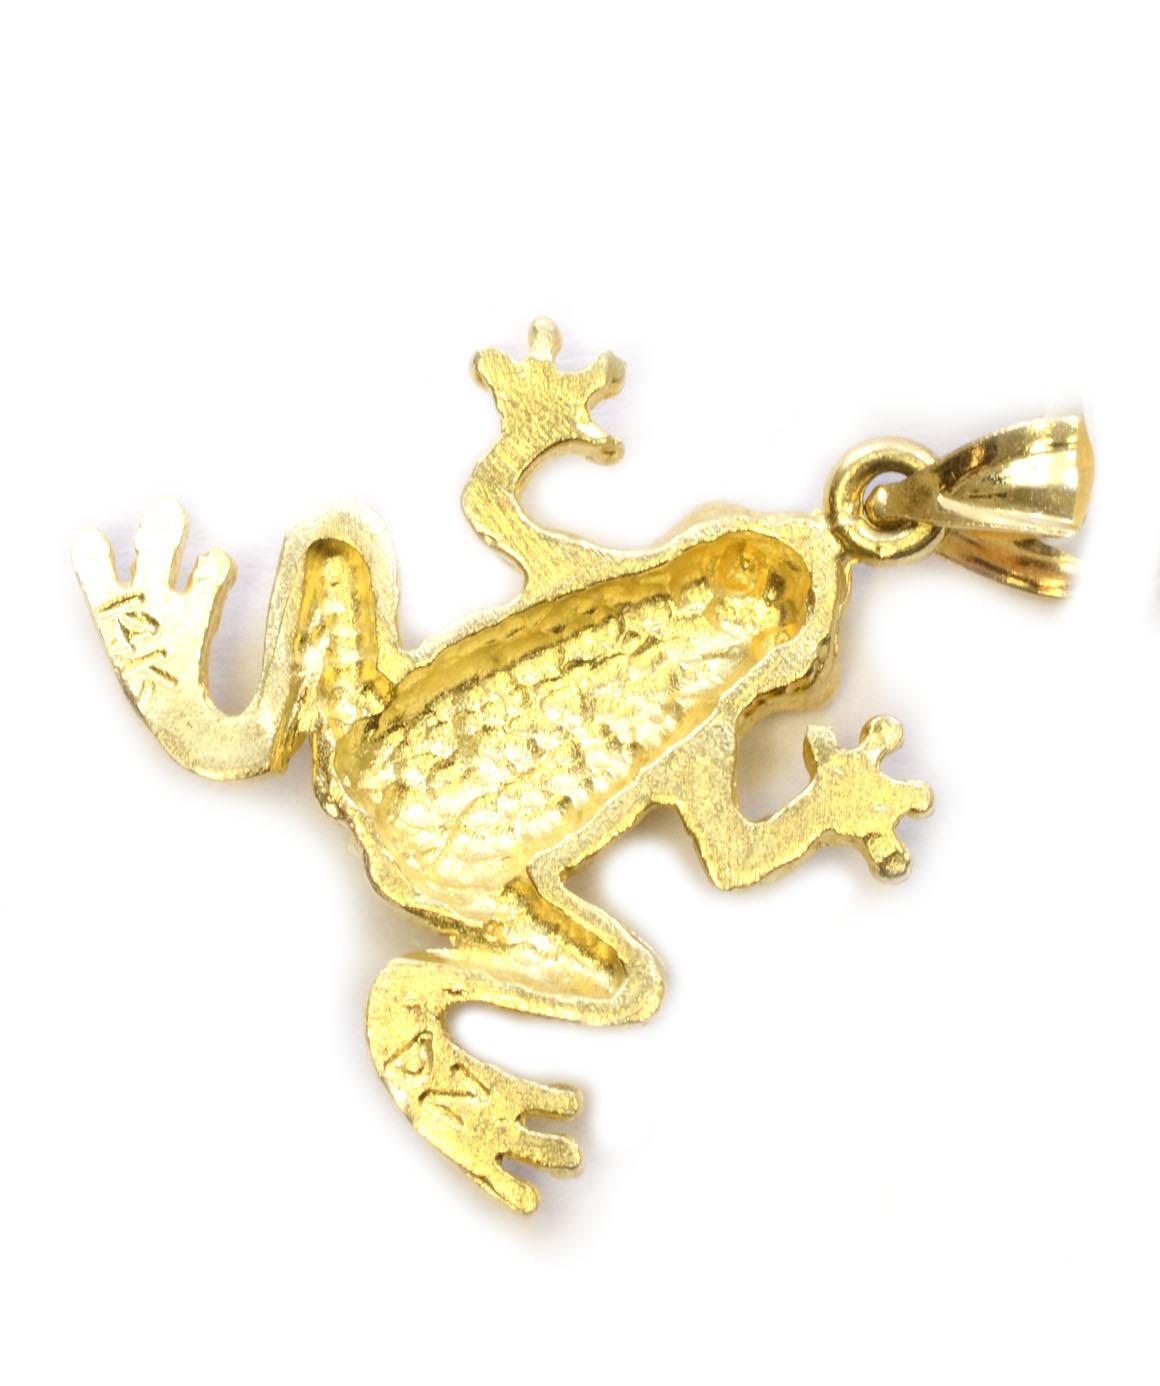 Women's or Men's Solid 14 Karat Yellow Gold Frog Pendant/ Charm 2.0 Grams